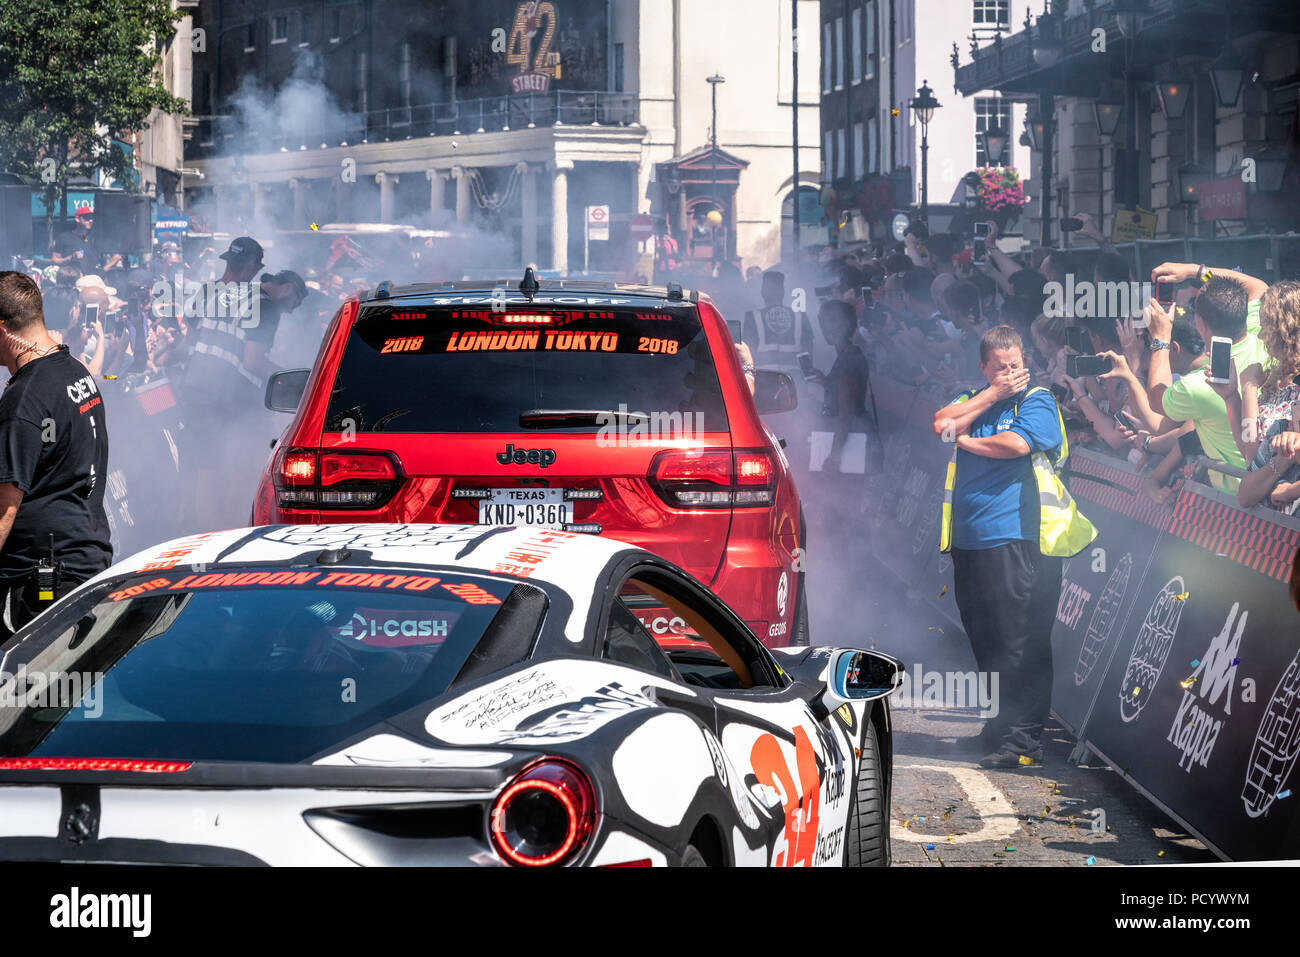 5 Aug 2018 - Londres, Royaume-Uni. Un steward couvrant le nez de fumée. Supercars puissants brûler des pneus de charity race, rallye Gumball 3000. Banque D'Images